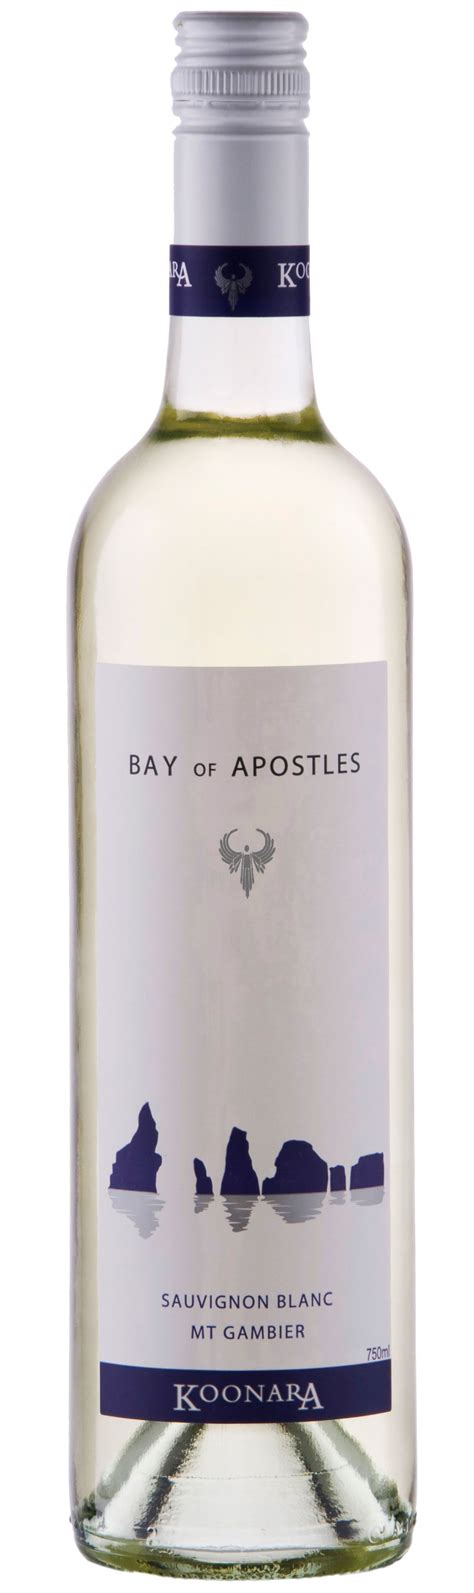 Koonara Bay of Apostles Sav Blanc | Wine bottle, Rosé wine bottle, Bottle